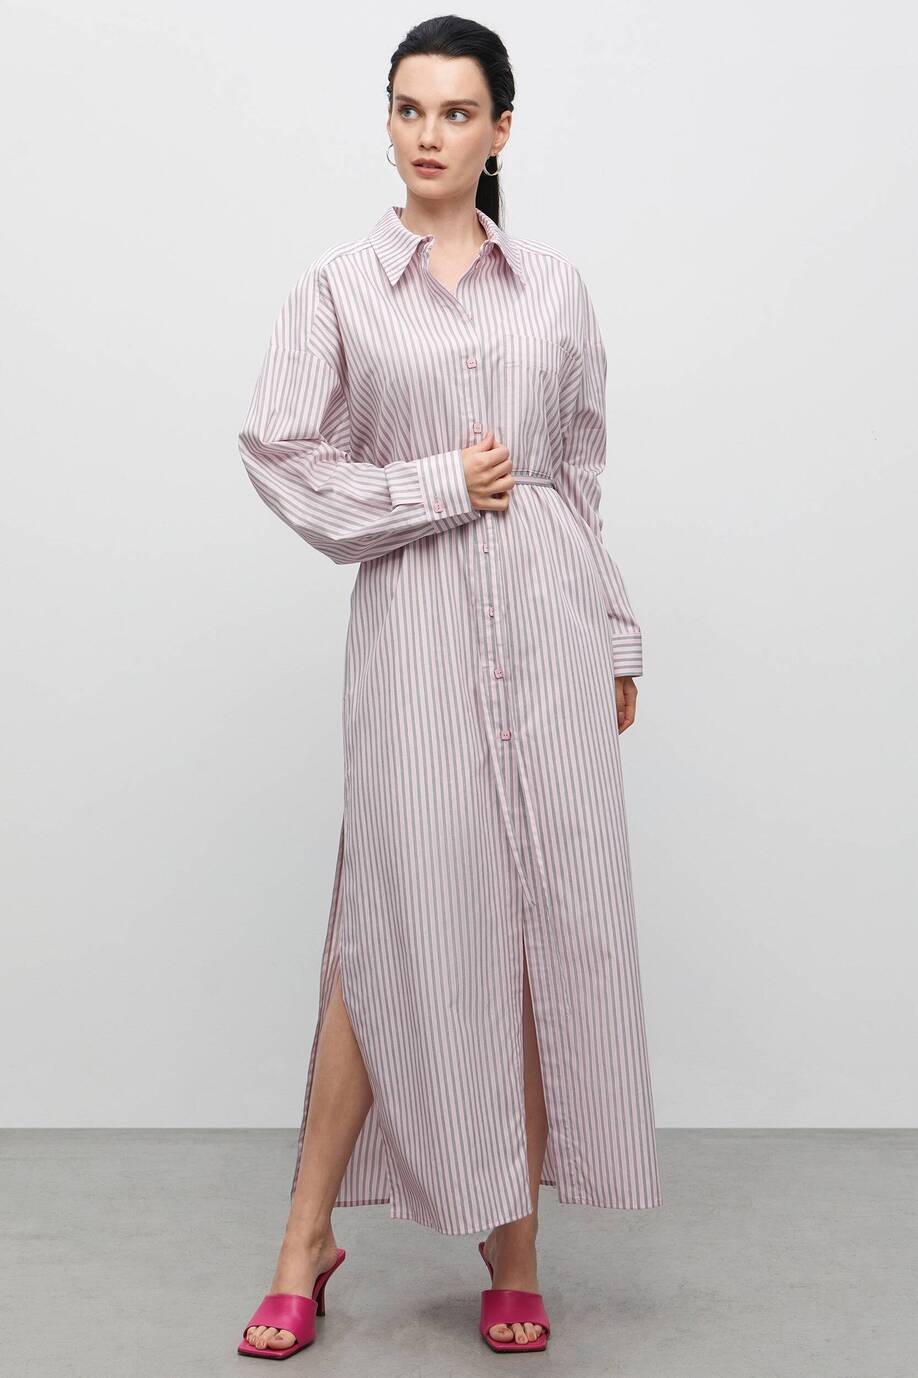 Pajama-style dress